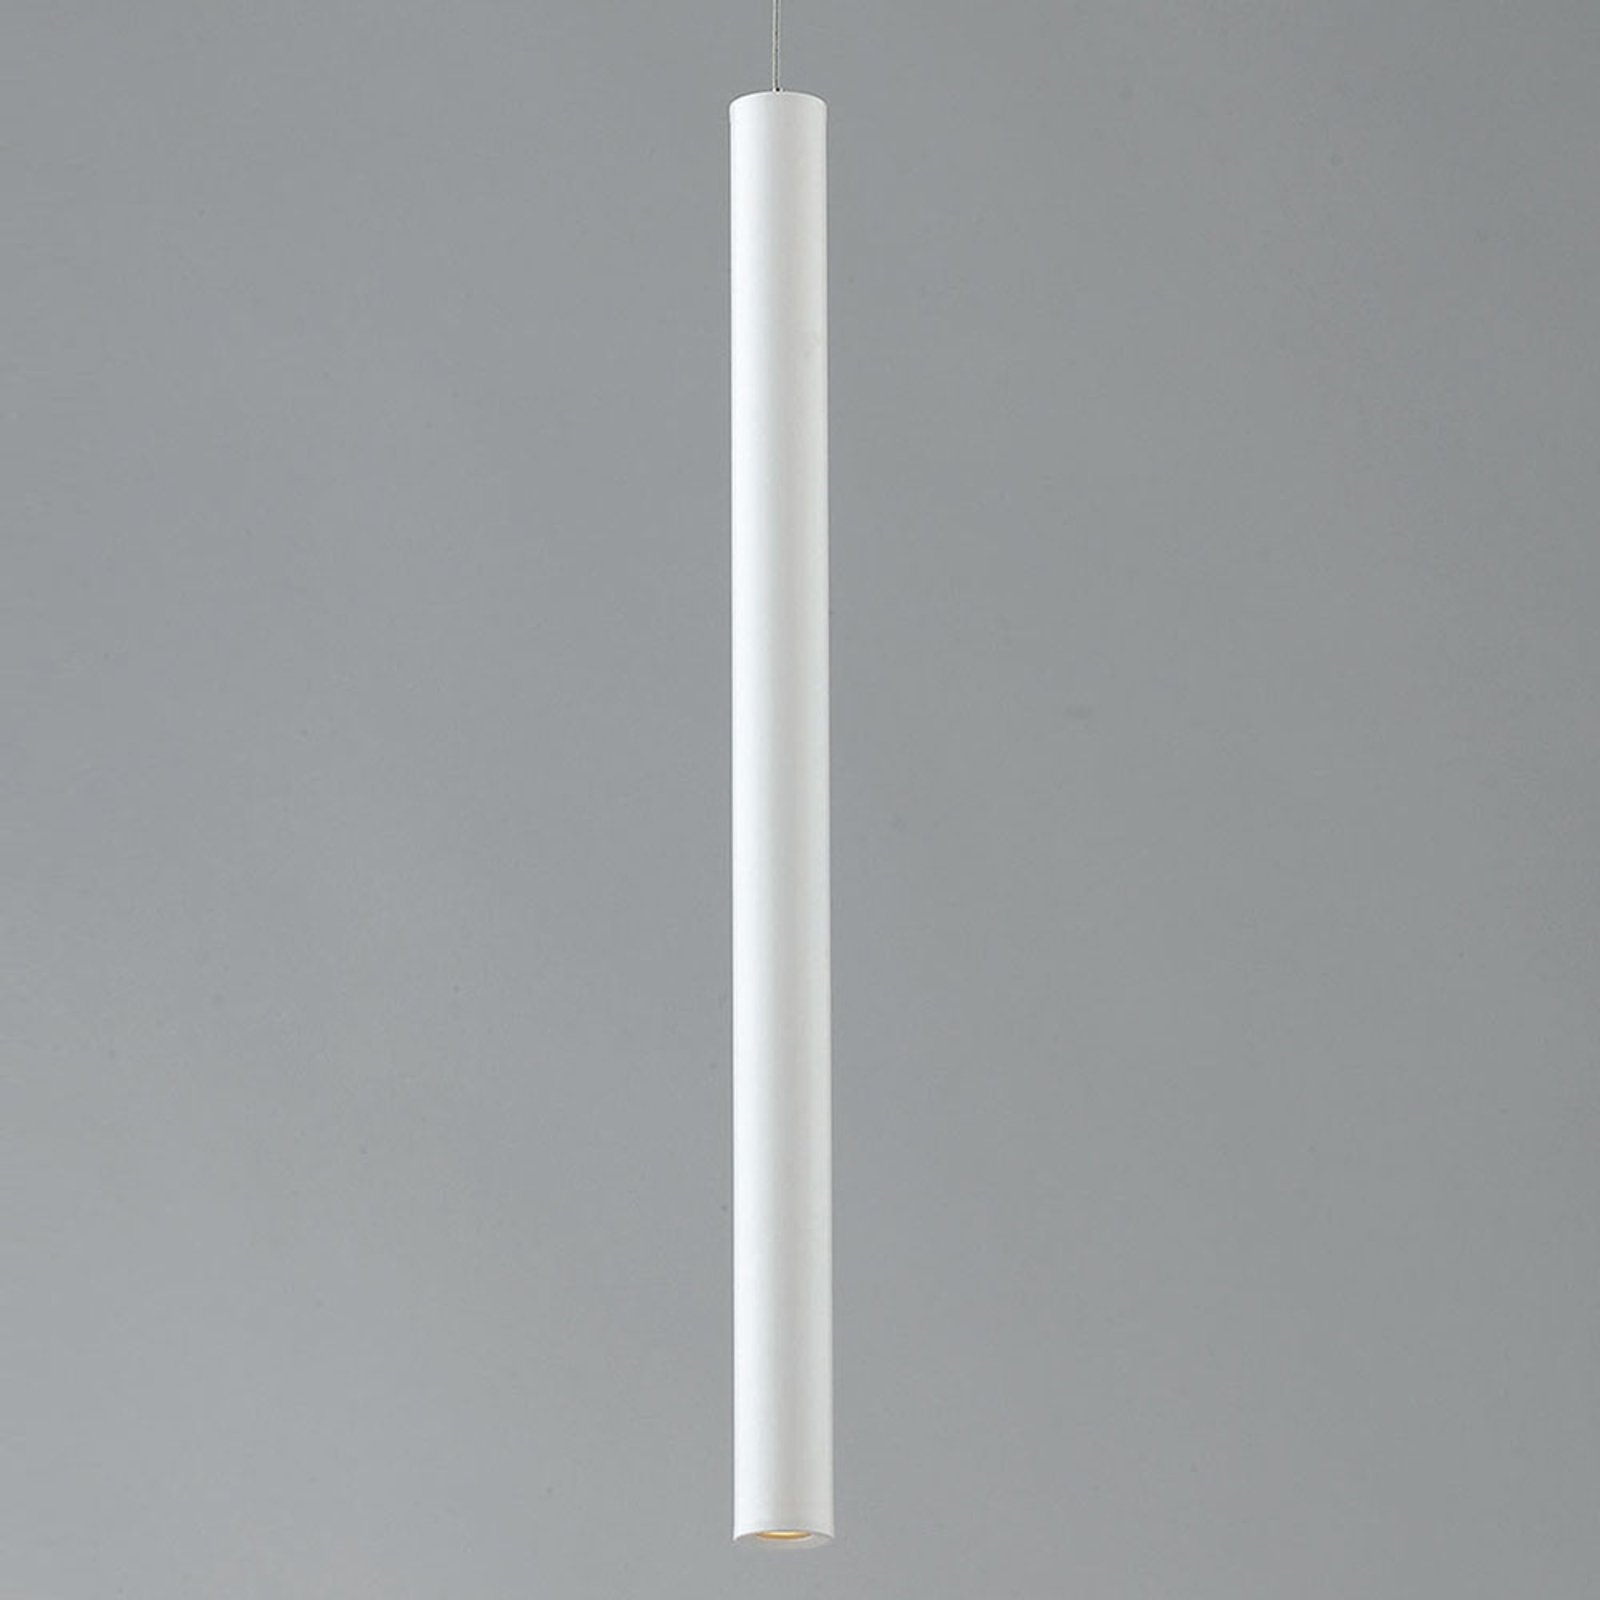 LED-skinne-pendellampe Oboe 3,5W 3 000 K, hvit